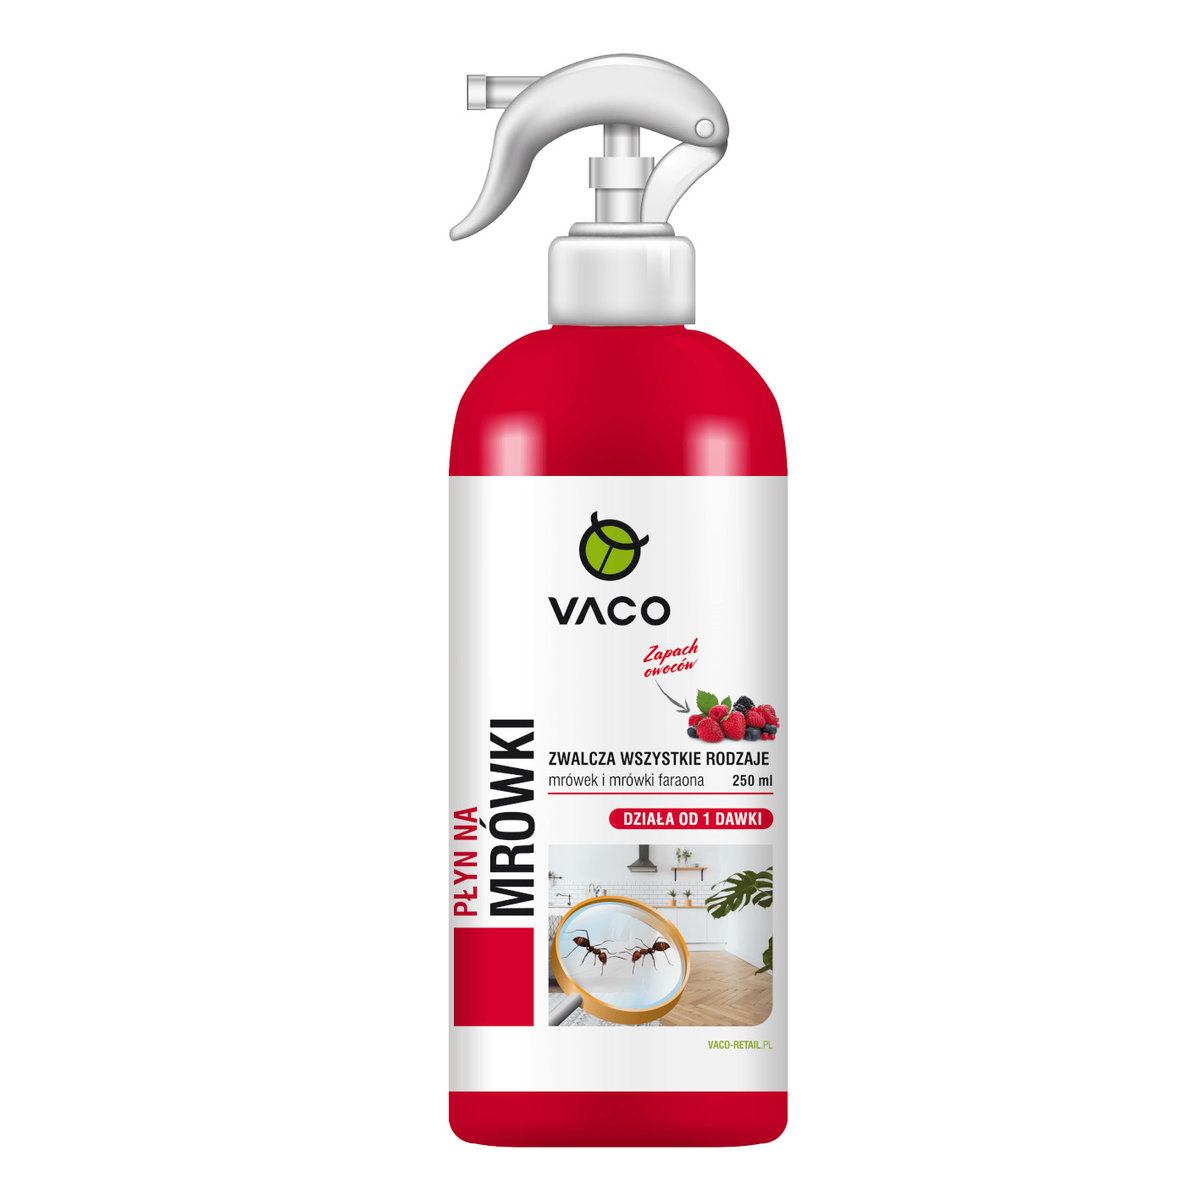 VACO Płyn na mrówki (wszystkie rodzaje) - 250 ml